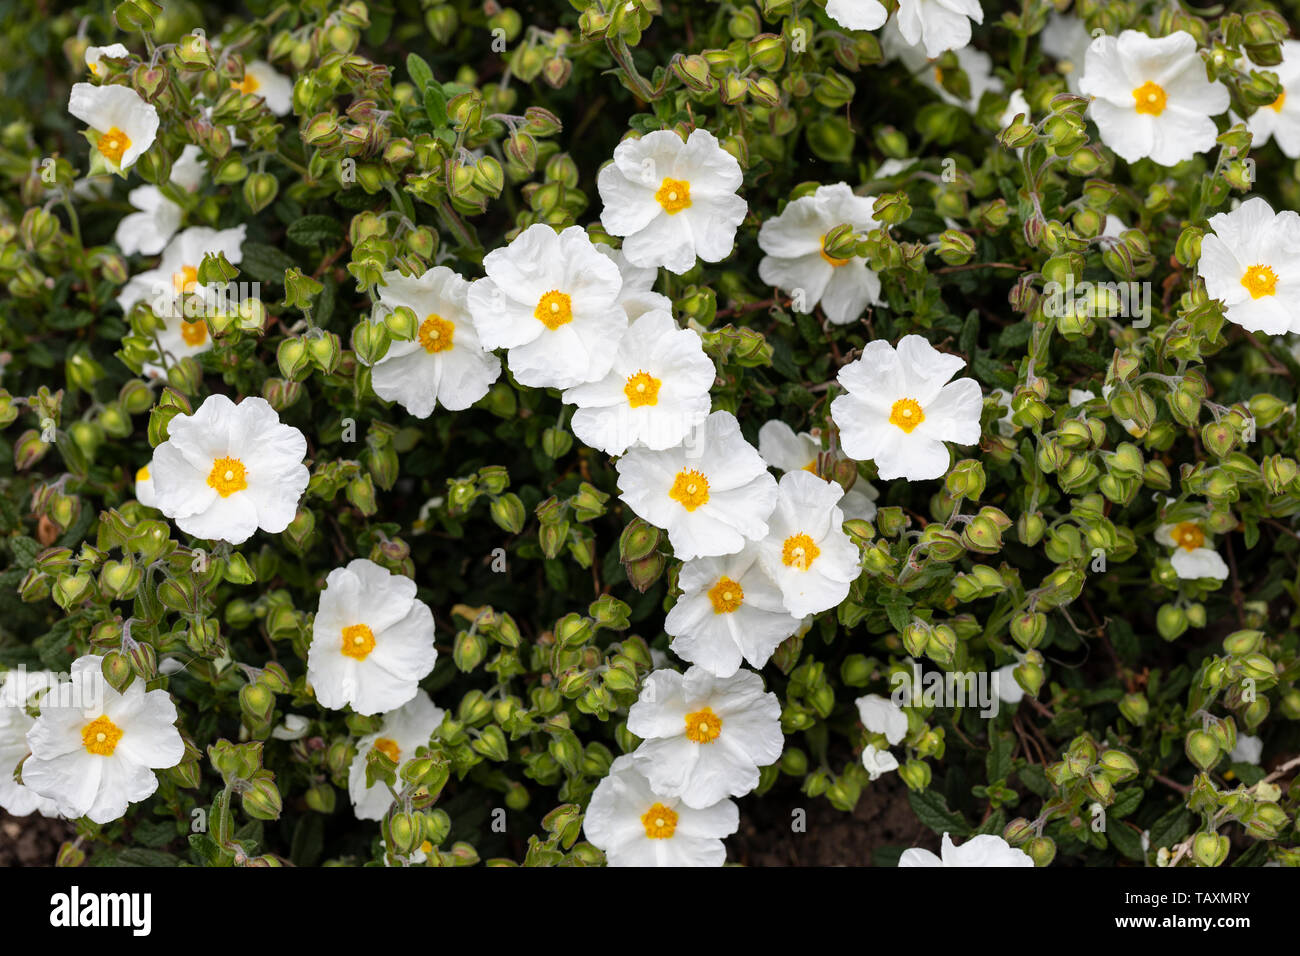 Close up of Cistus Obtusifolius Thrive white rock rose flowering in an English garden, UK Stock Photo